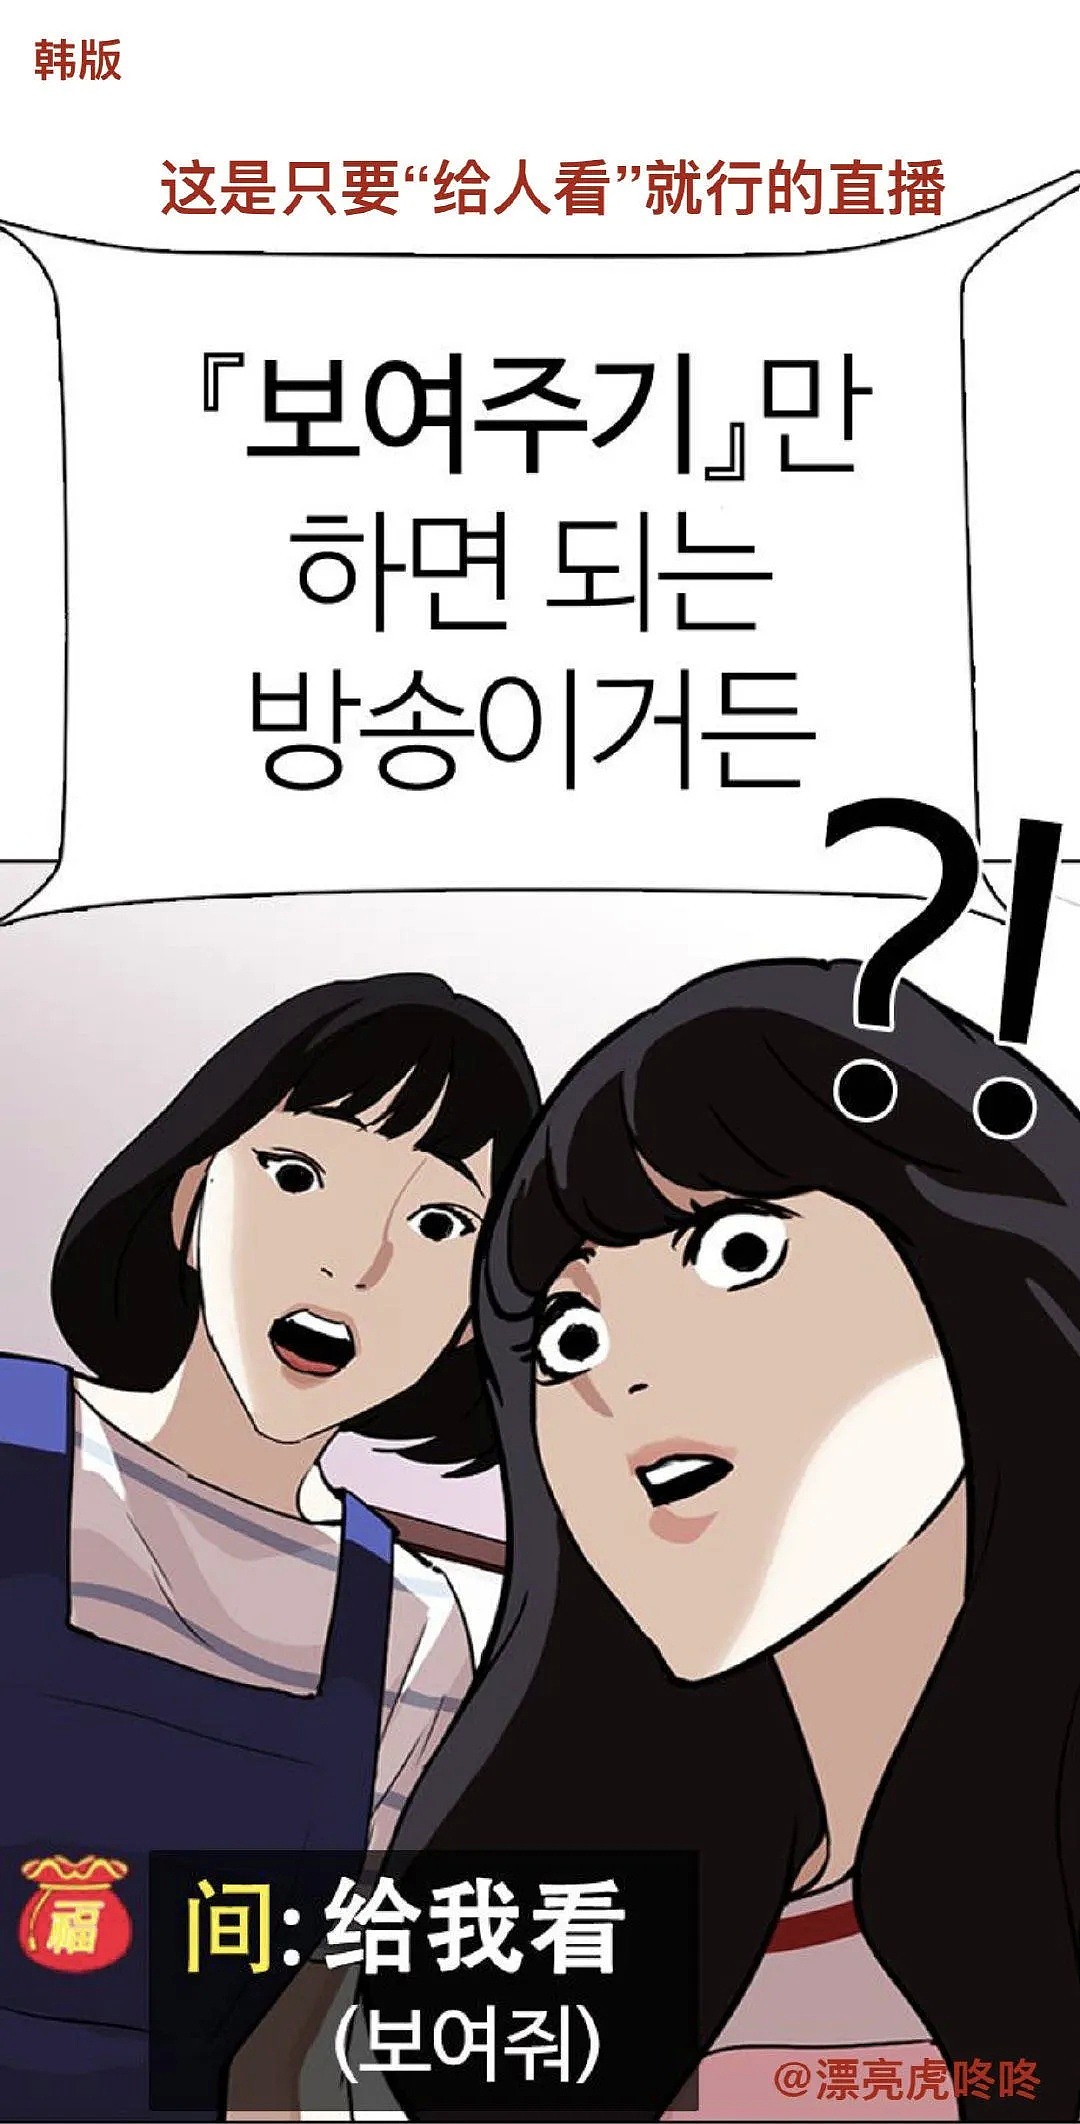 含沙射影?韩国人气漫画居然把「N号房事件」篡改成发生在中国？（组图) - 3